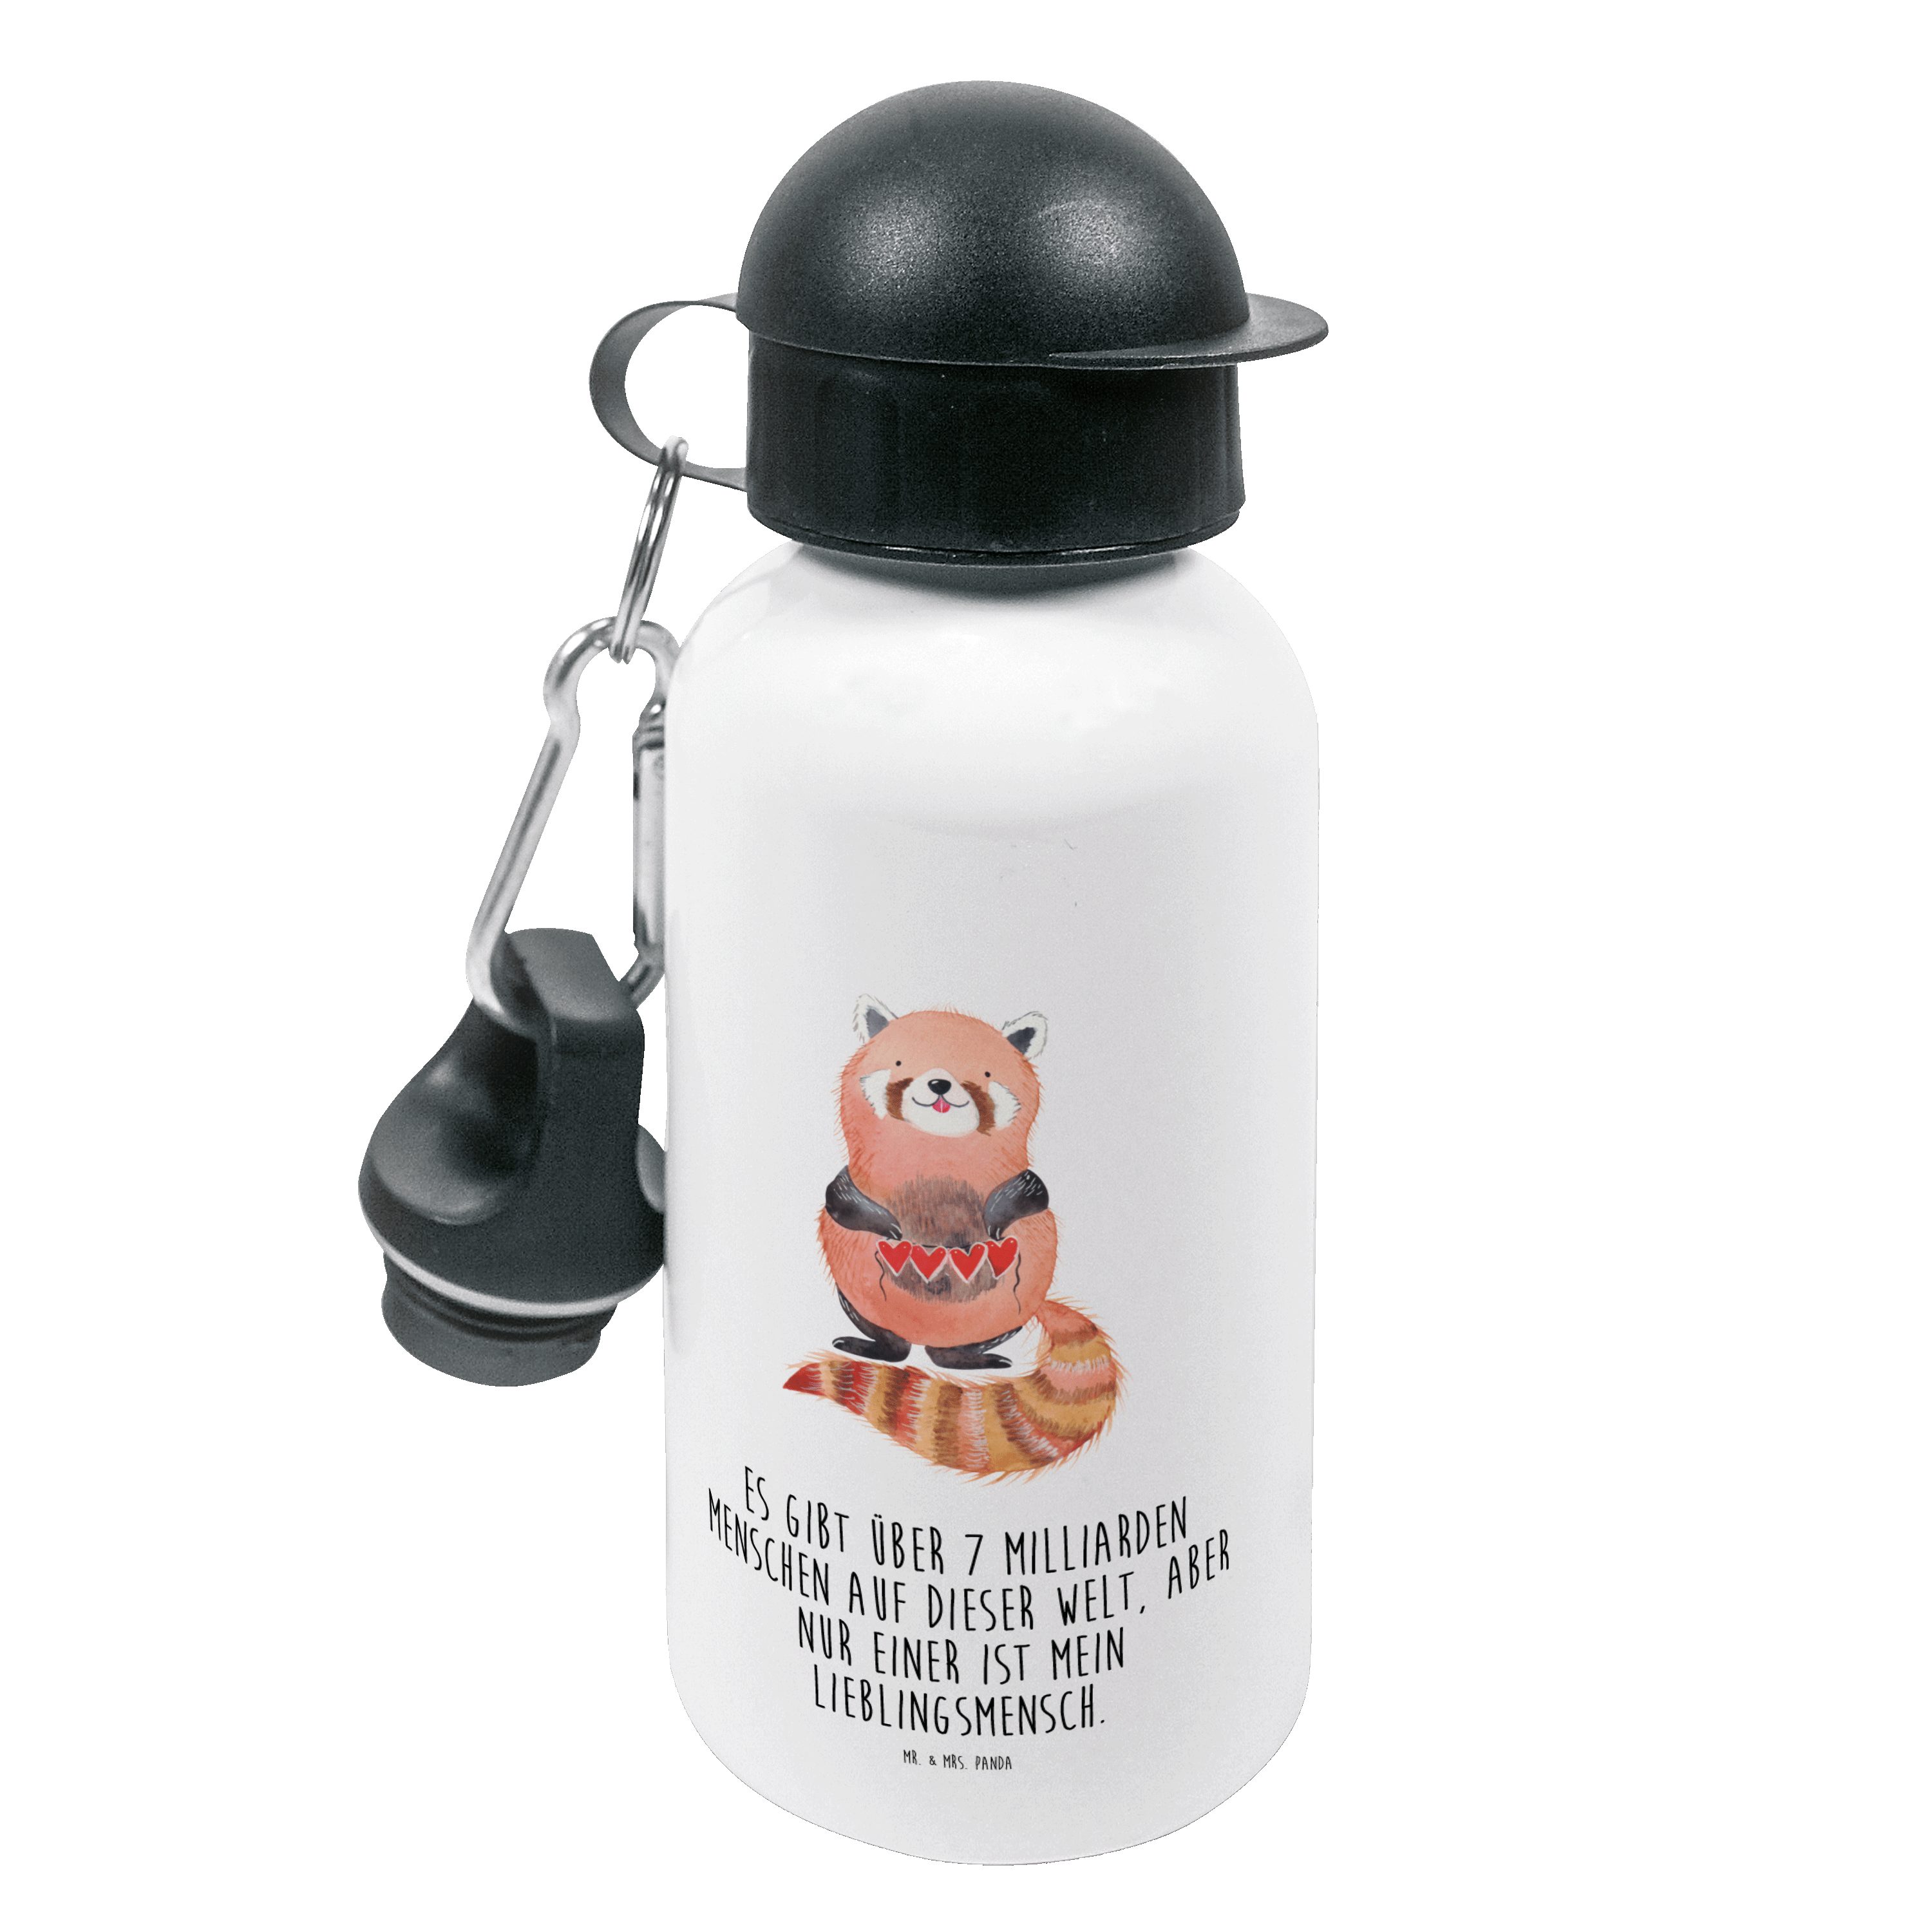 Mr. & Mrs. Panda Trinkflasche Roter Panda - Weiß - Geschenk, Kinder Trinkflasche, lustige Sprüche